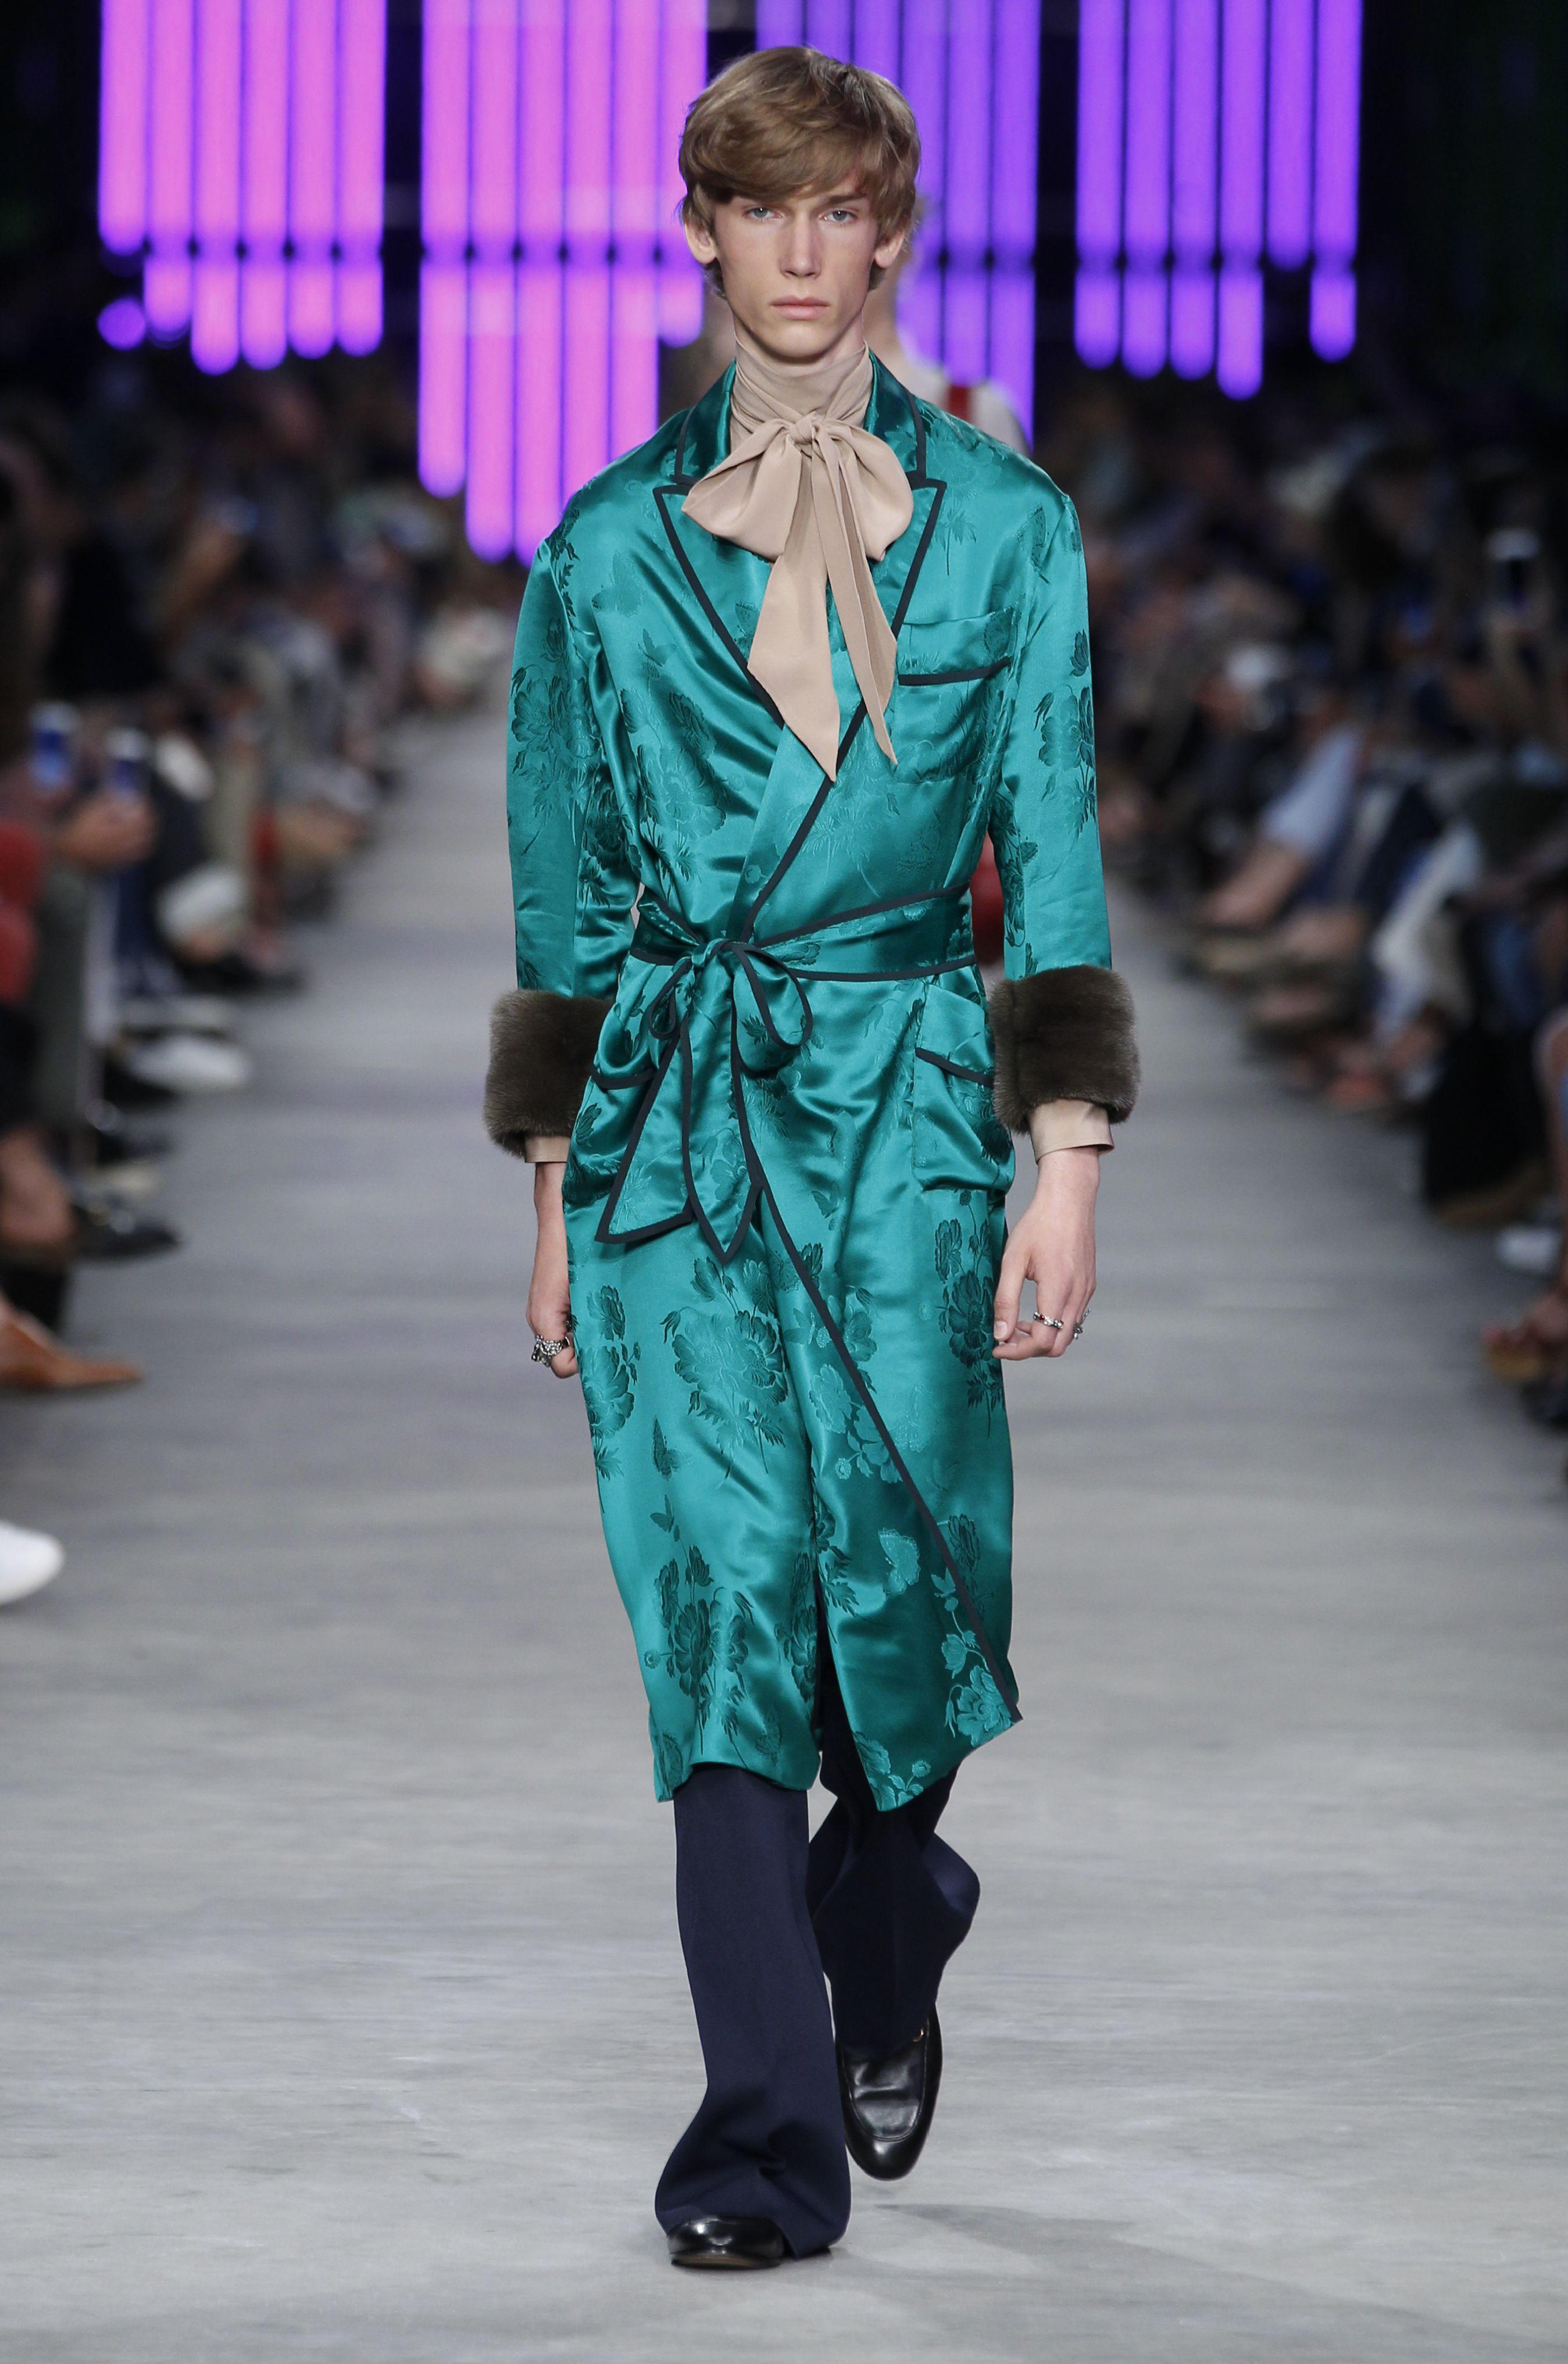 La vestaglia in raso sulla pedana Gucci per la collezione uomo primavera/estate 2015-2016